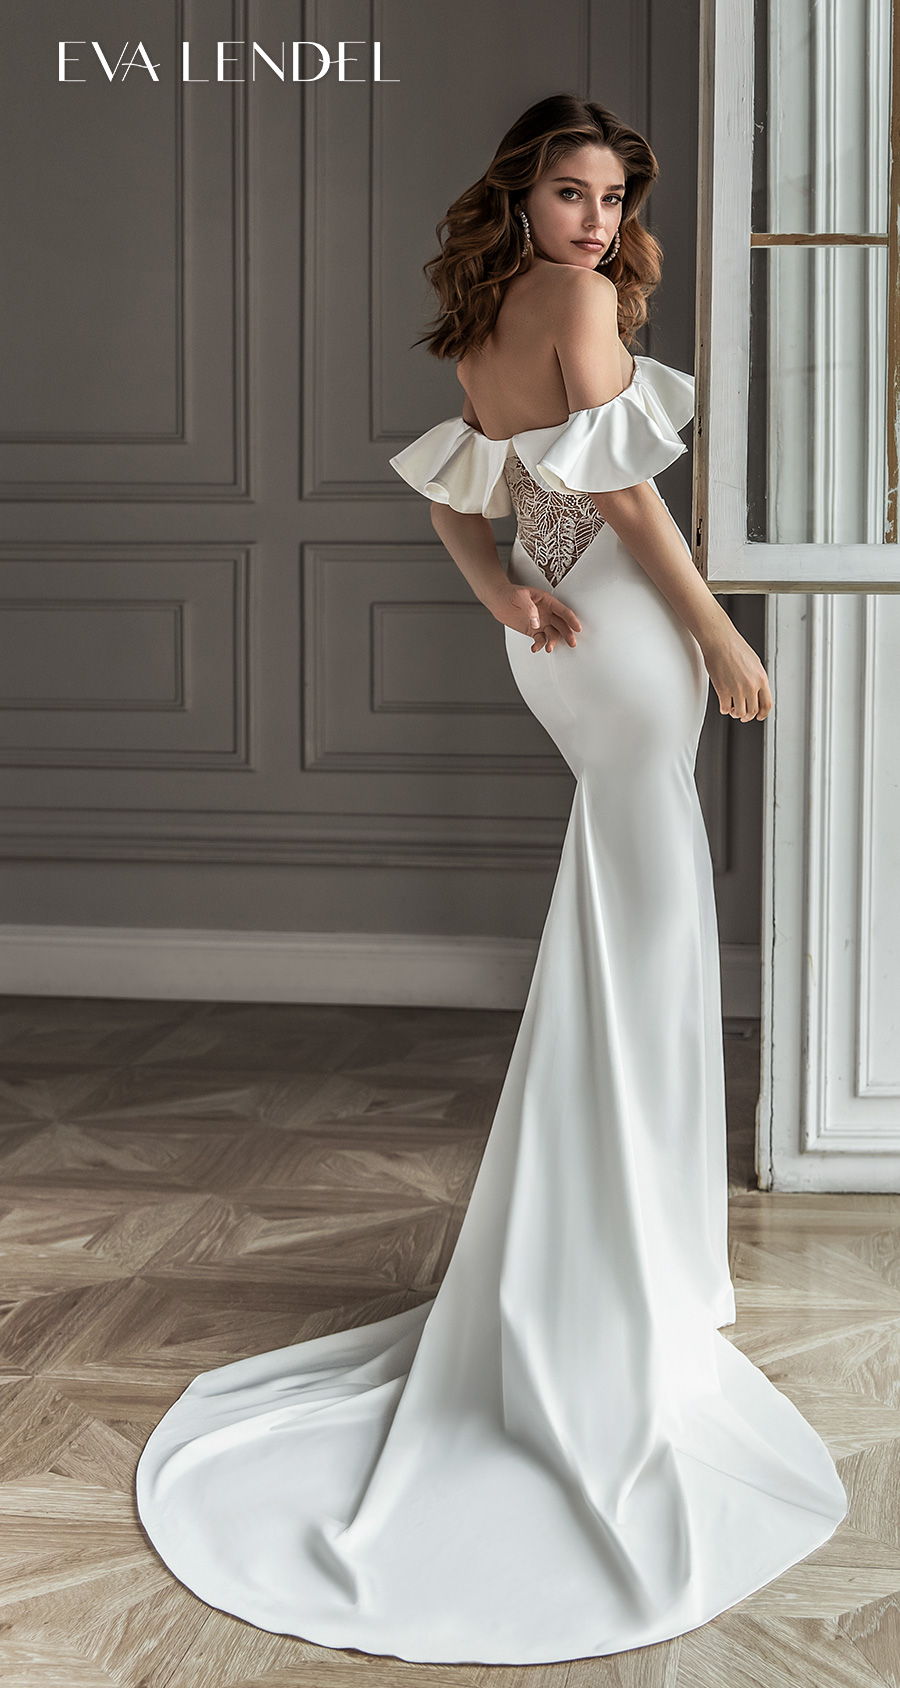 eva lendel 2021 bridal off the shoulder sweetheart neckline simple minimalist elegant fit and flare wedding dress mid back short train (helen) bv